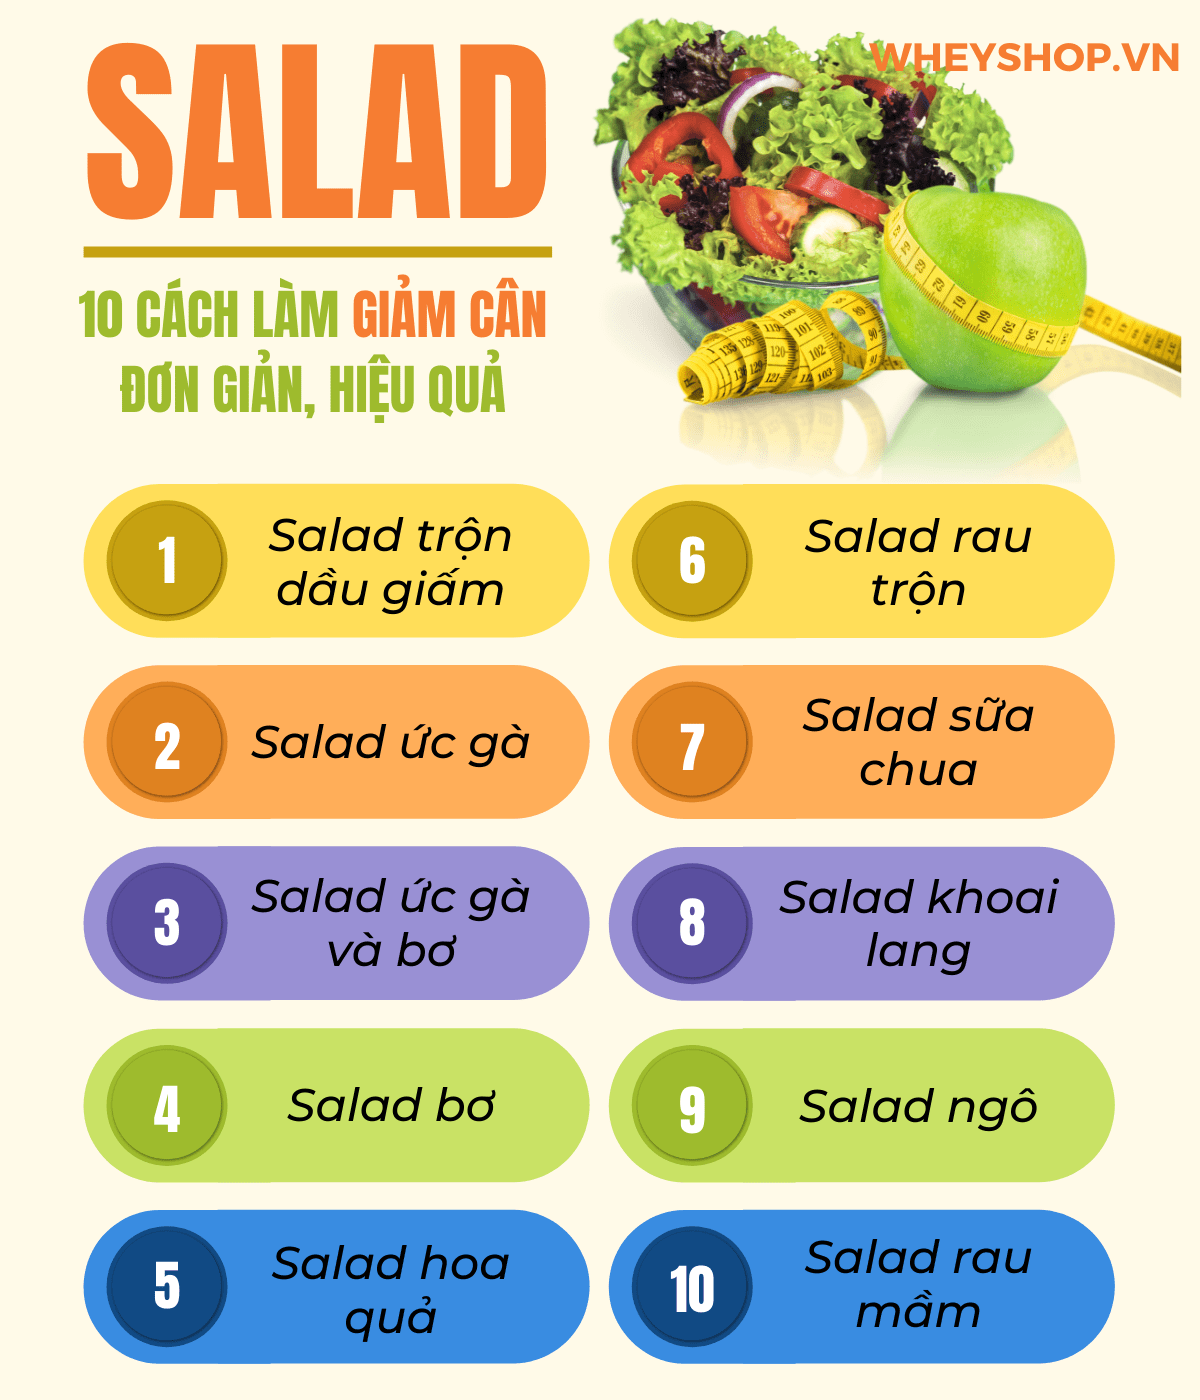 Nếu bạn đang băn khoăn tìm cách giảm cân thì hãy cùng WheyShop tham khảo 10+ cách làm Salad giảm cân đơn giản mà hiệu quả bất ngờ tại...